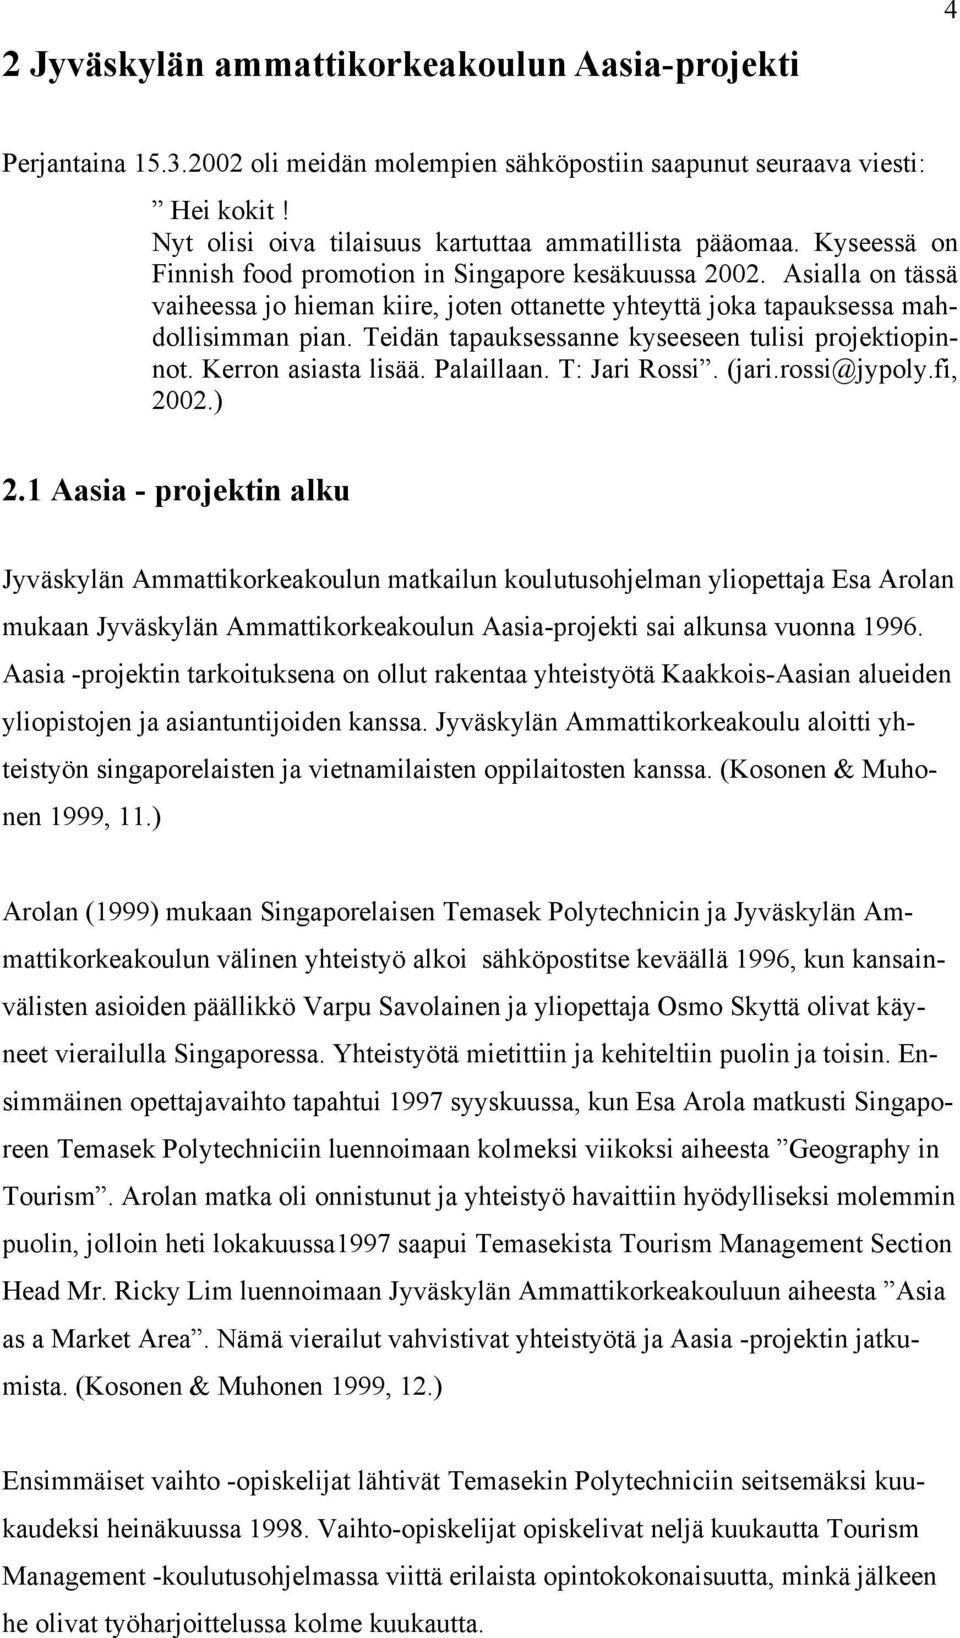 Teidän tapauksessanne kyseeseen tulisi projektiopinnot. Kerron asiasta lisää. Palaillaan. T: Jari Rossi. (jari.rossi@jypoly.fi, 2002.) 2.